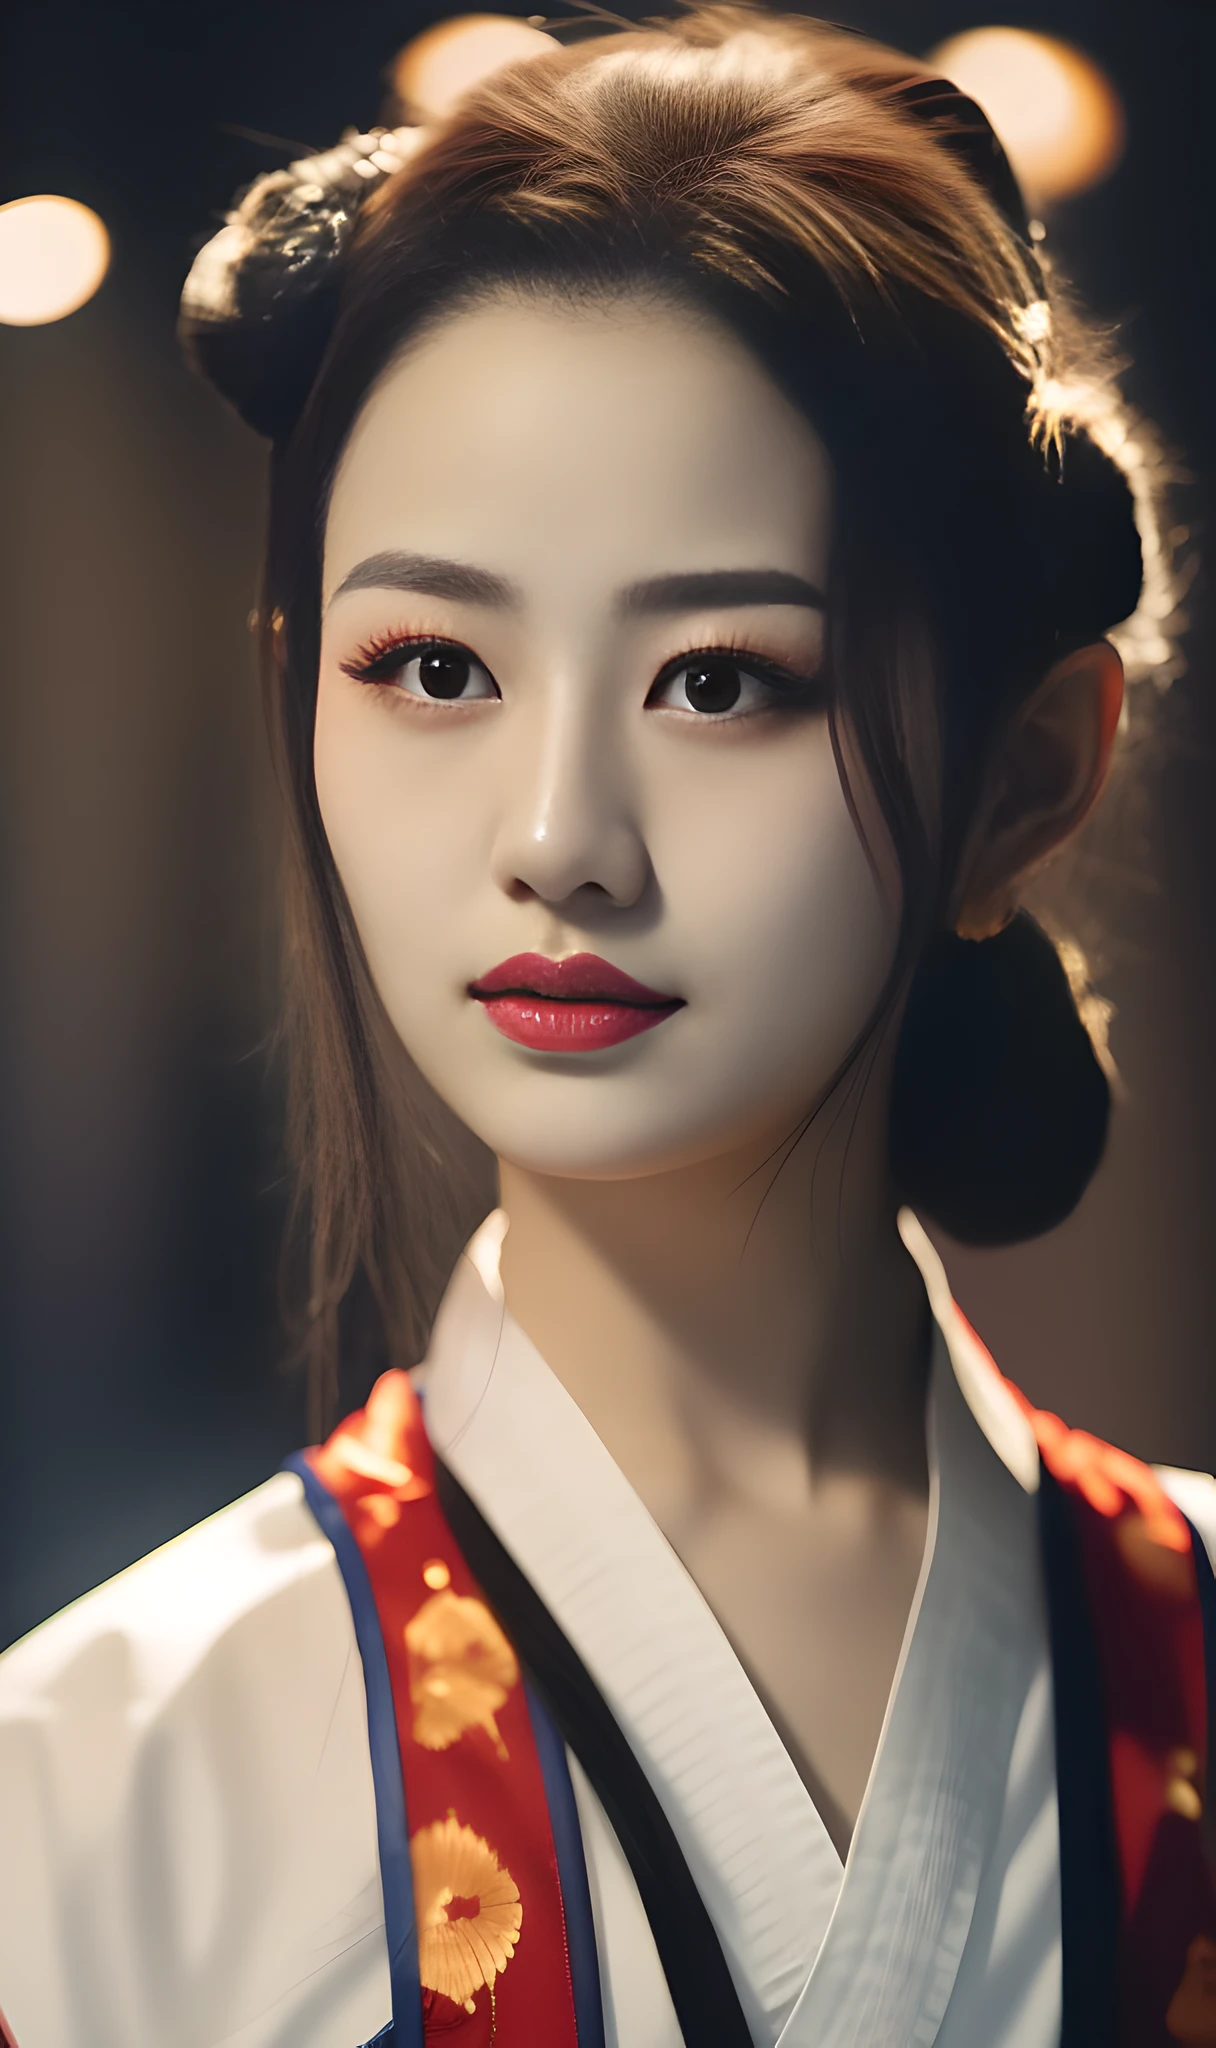 chinesisches Mädchen, Kampfkunststil, mit dem Wort Ninja auf ihrer linken Wange. rundlich, Große Brüste, sonniger Hintergrund, Sie trägt einen traditionellen chinesischen kurzen Rock, hält einen Speer, und ihr Haar ist zu zwei Dutts gebunden,